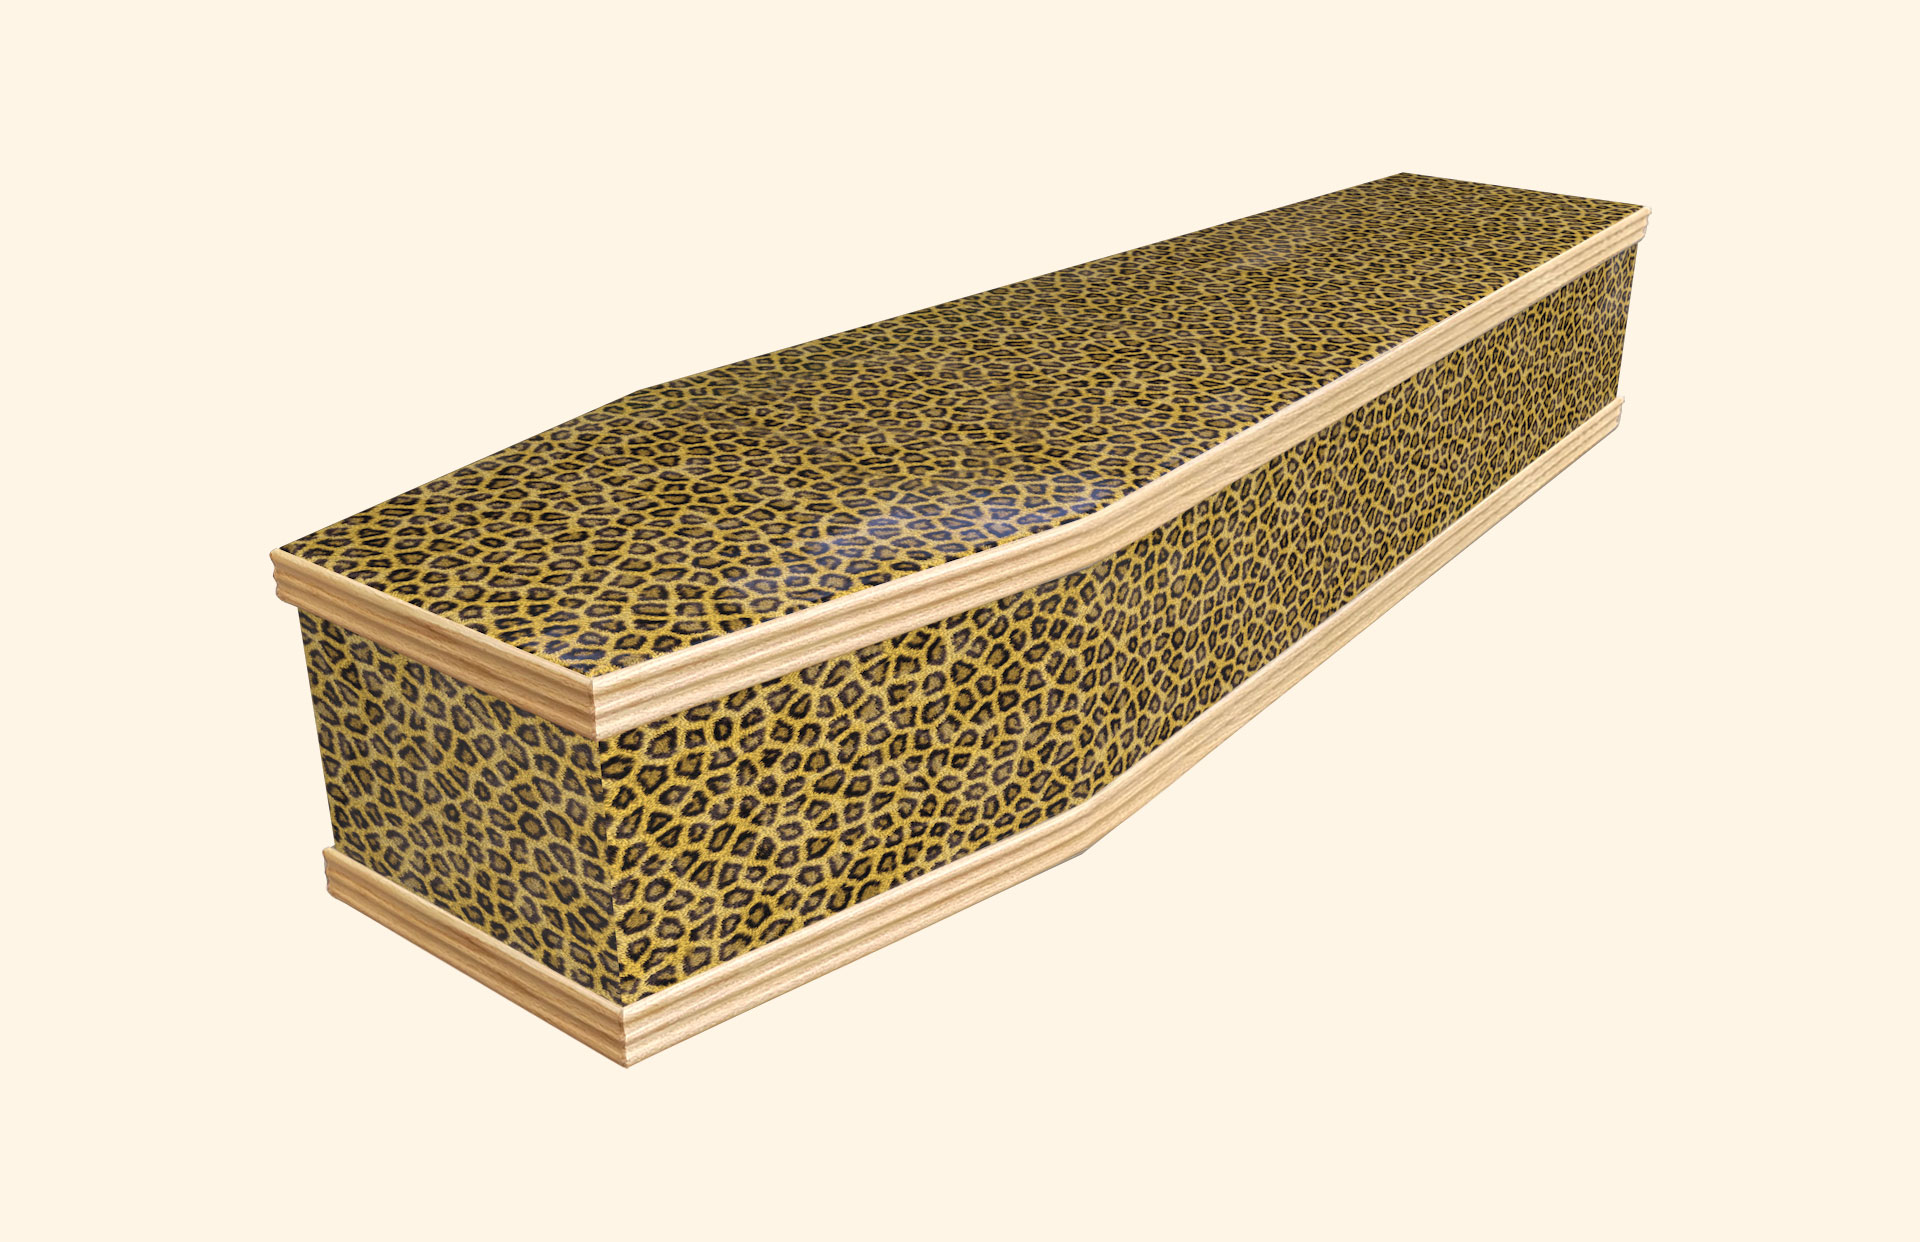 Leopard Skin design on a classic coffin